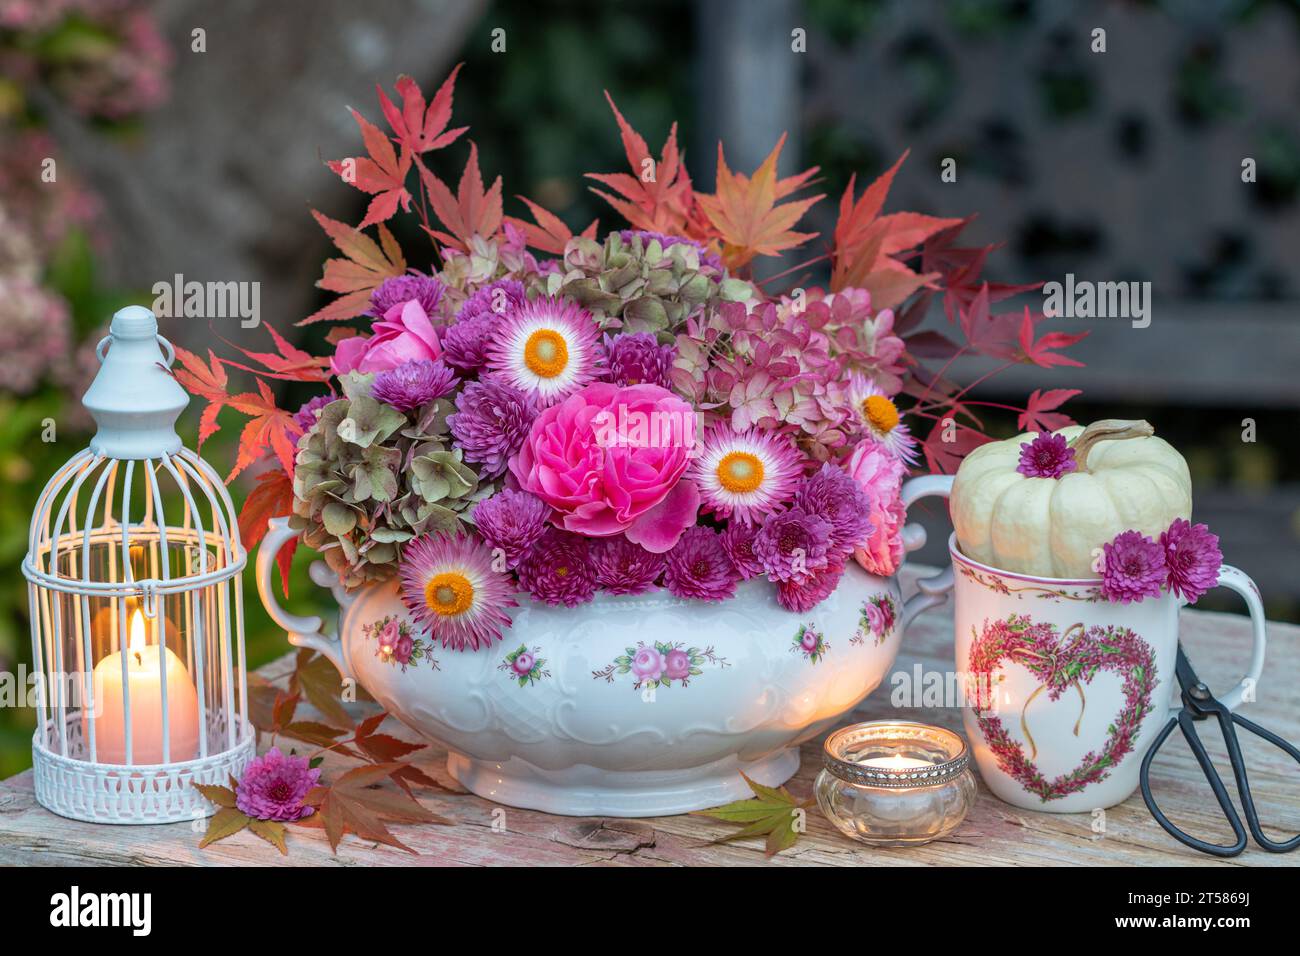 arrangement de fleurs romantiques de roses roses, fleurs d'hortensia, chrysanthèmes et feuilles d'érable dans la soupe vintage Banque D'Images